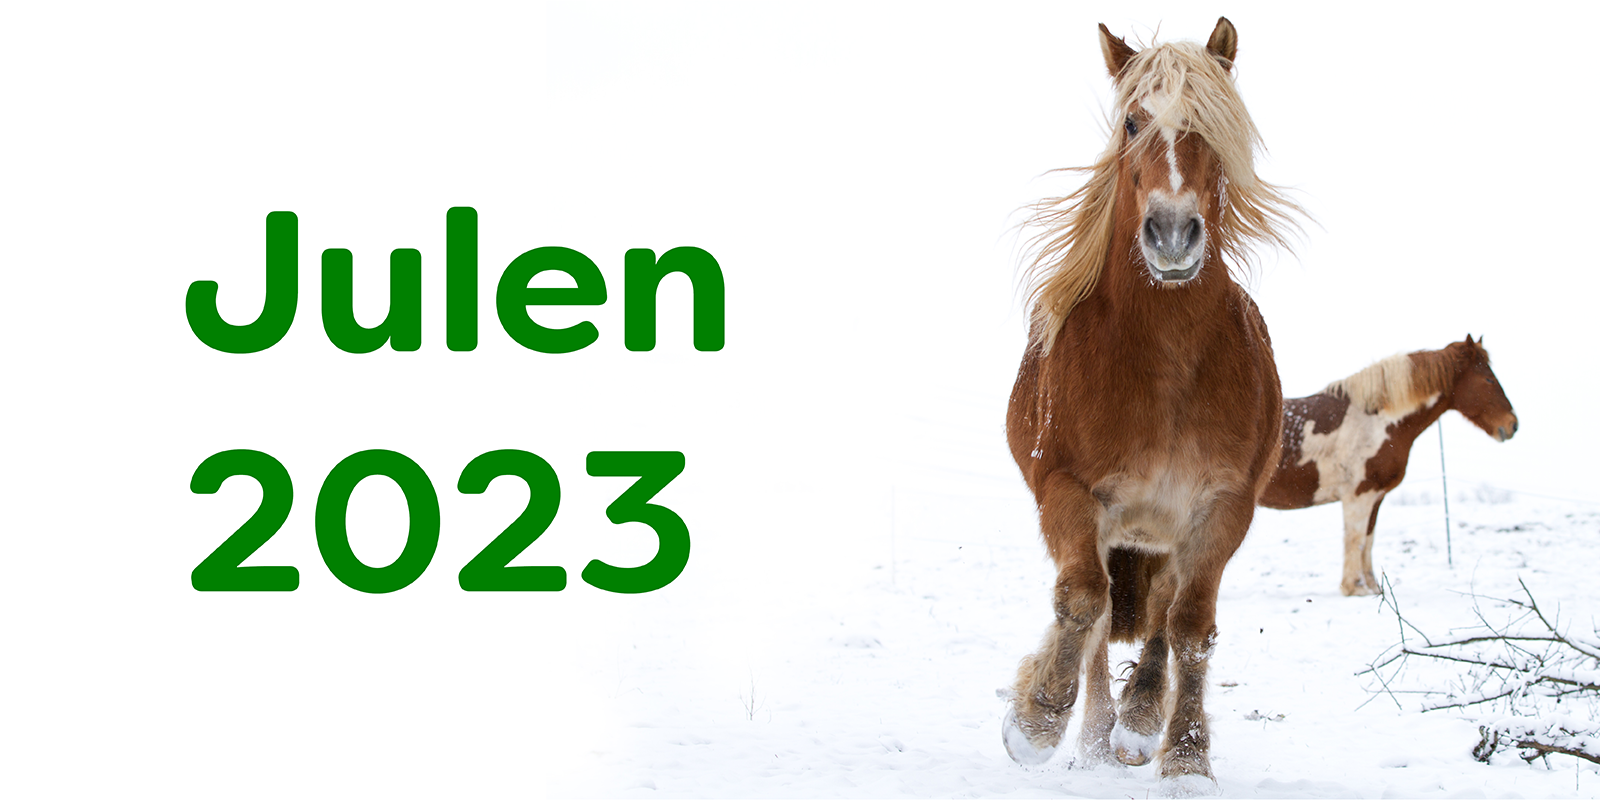 Julen 2022 - to heste på en mark med sne